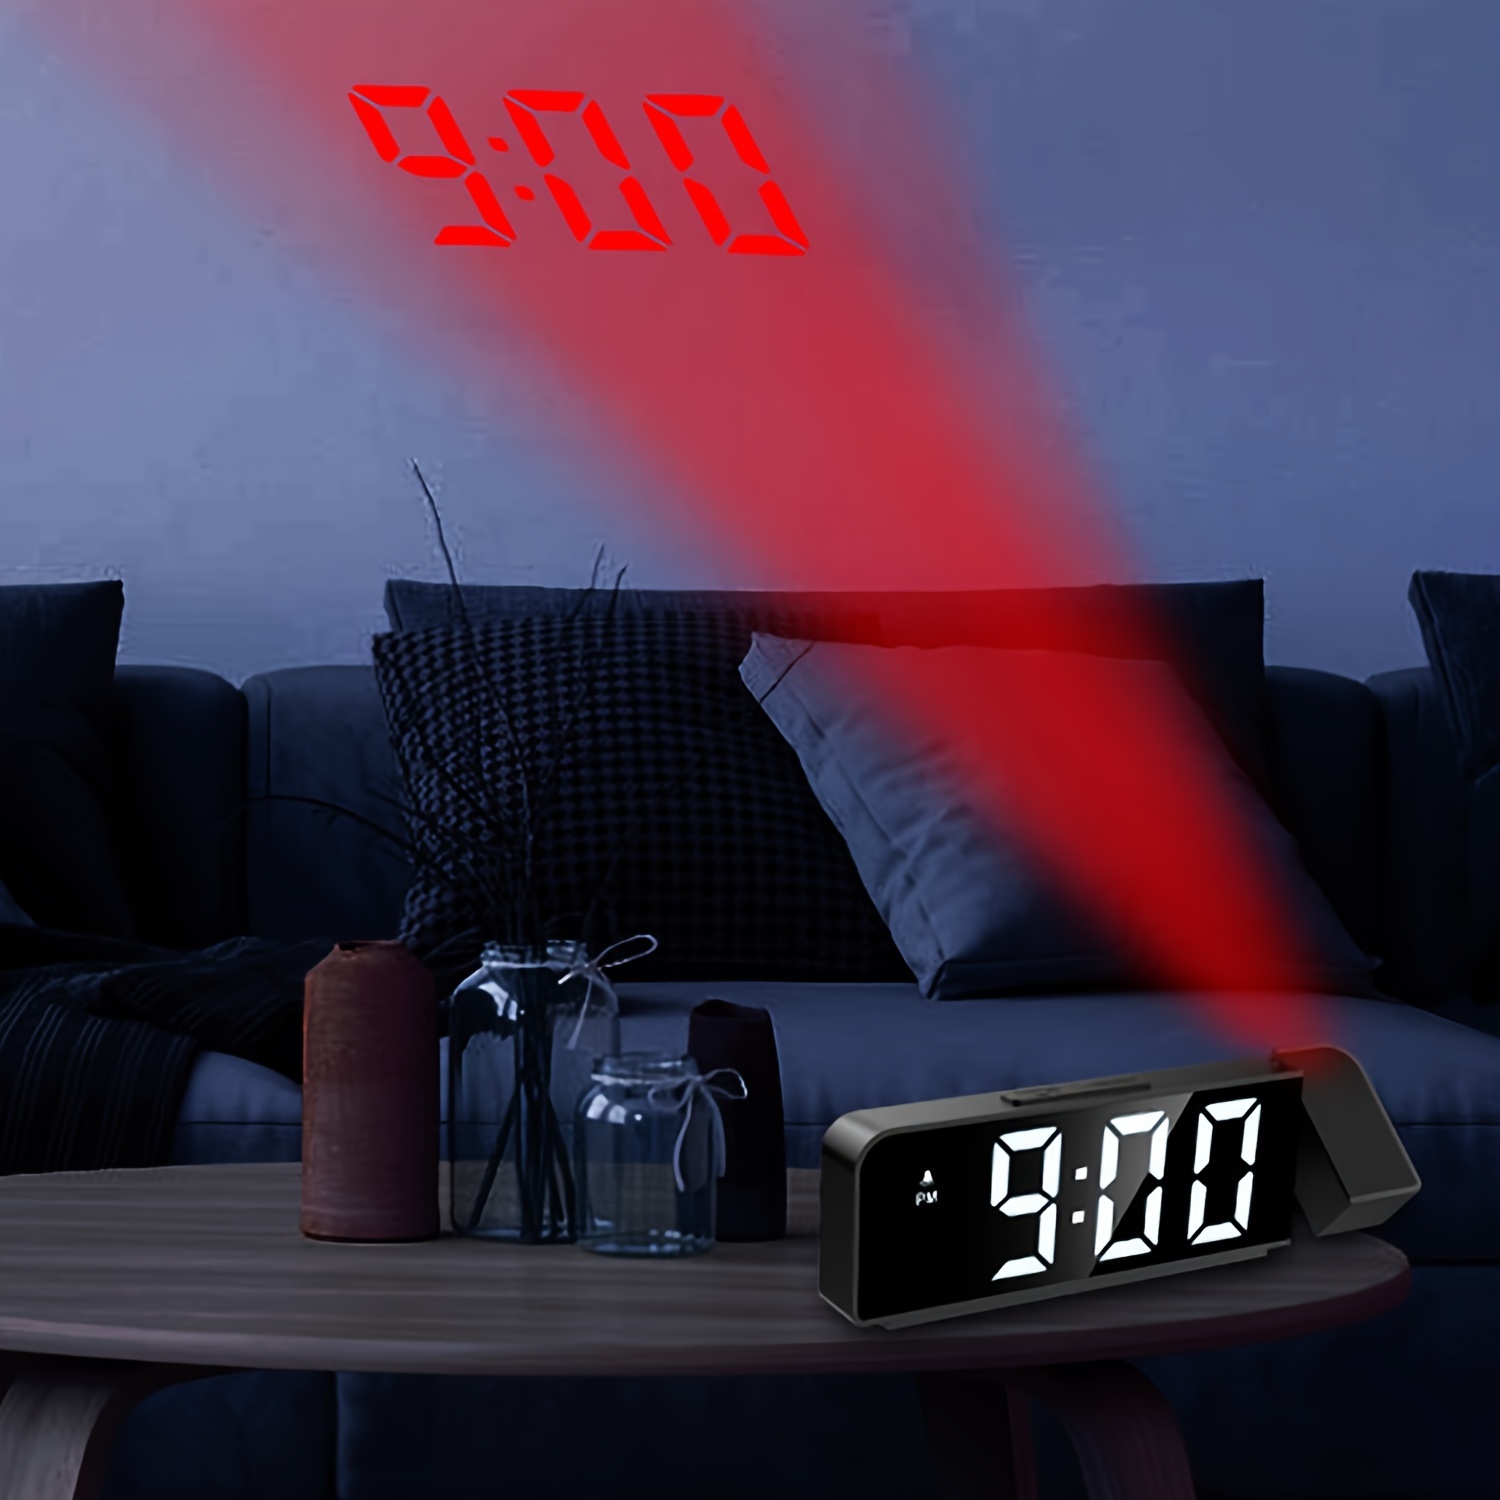 Un reloj en una mesita de noche con el tiempo de 6: 30